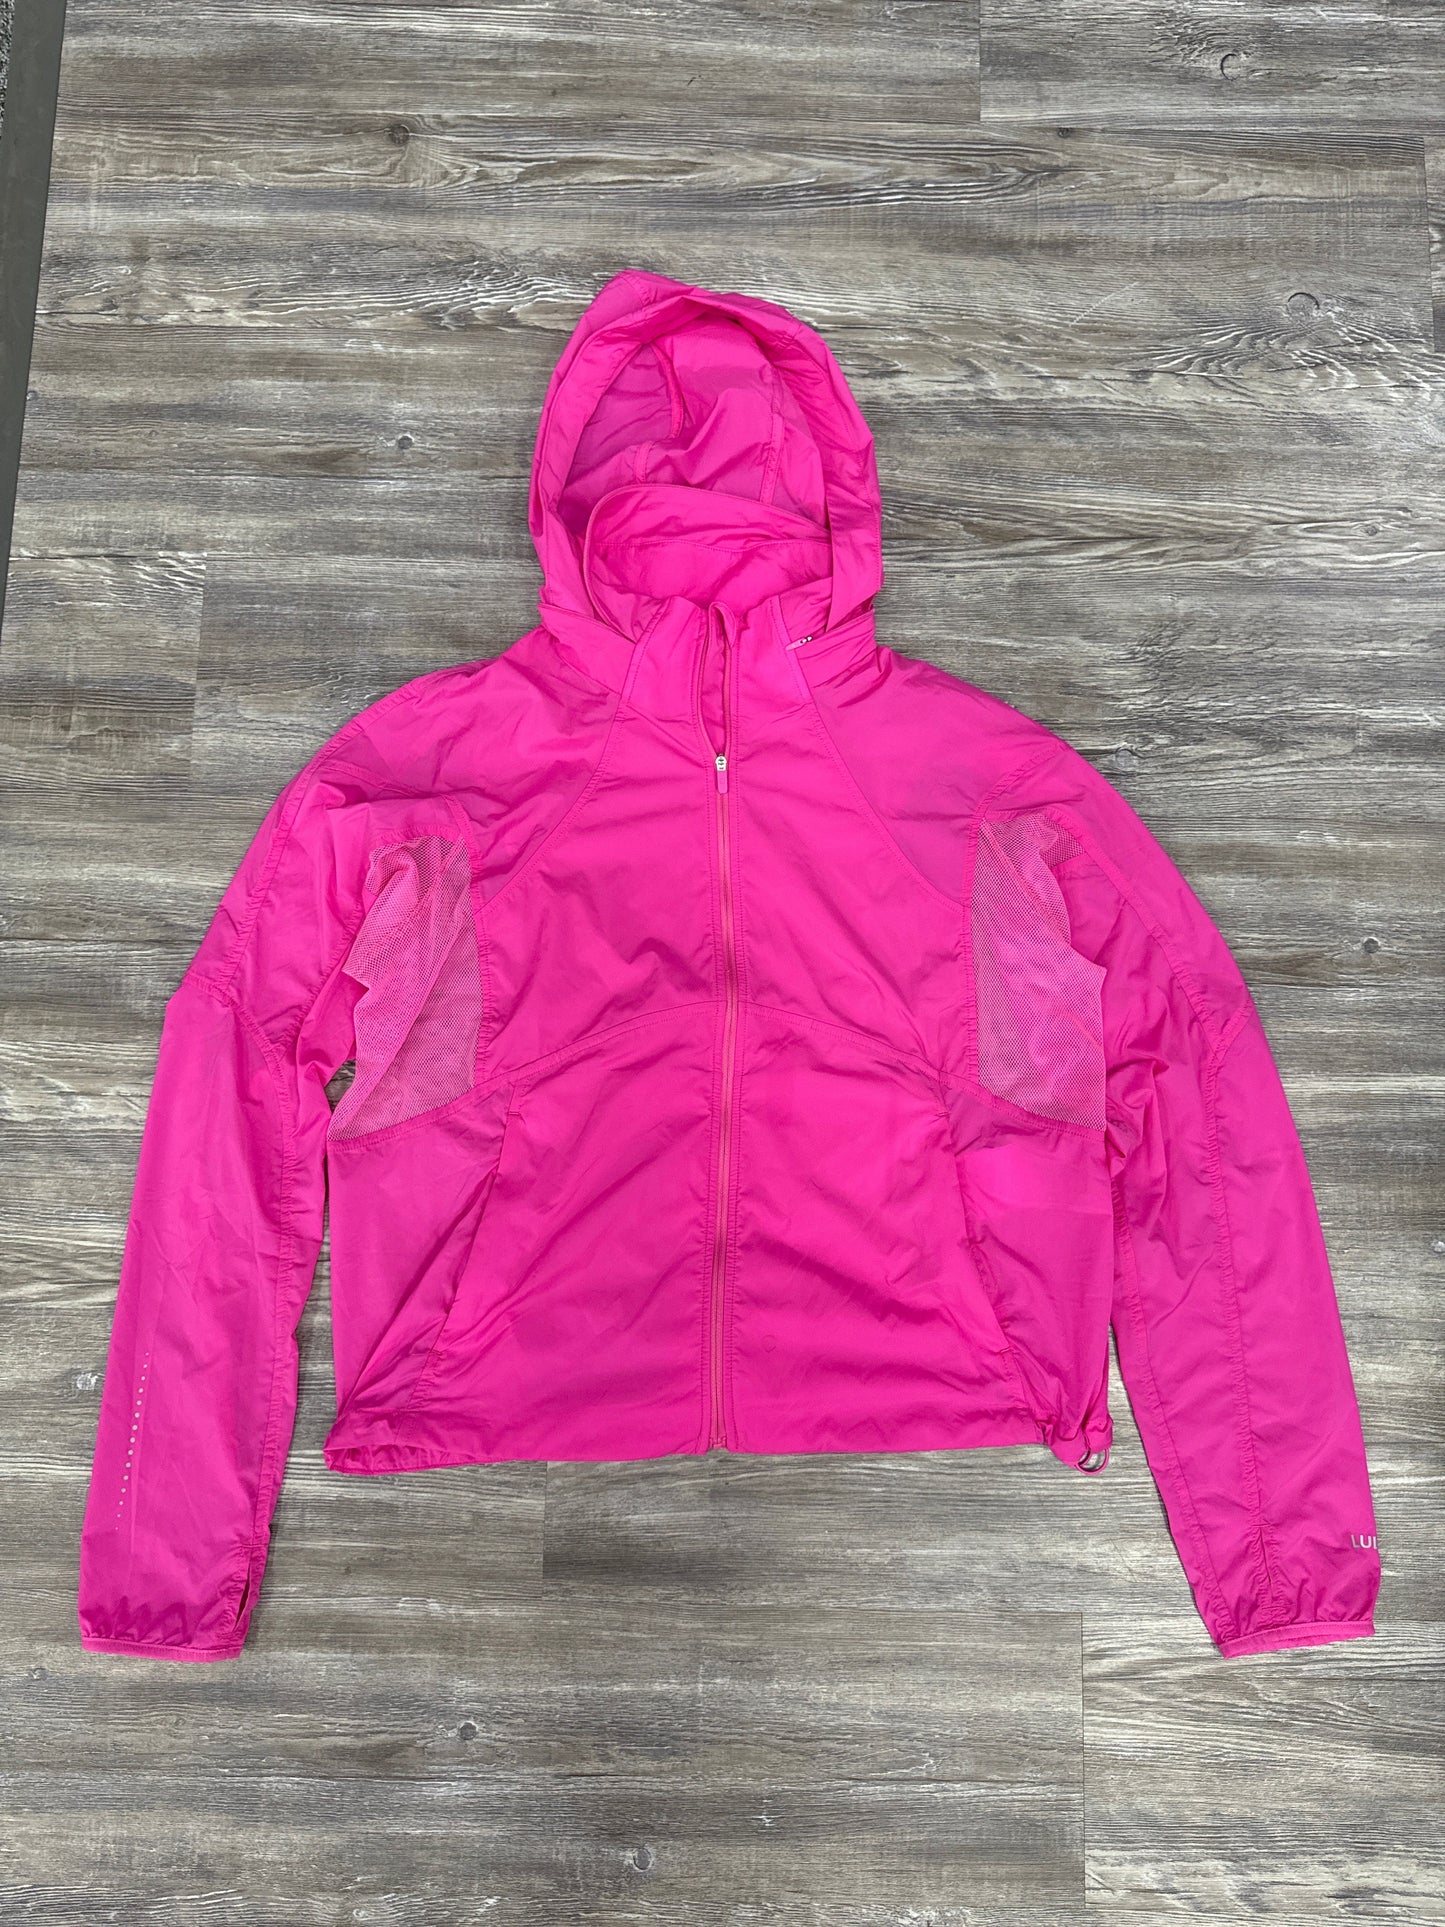 Pink Athletic Jacket Lululemon, Size 10